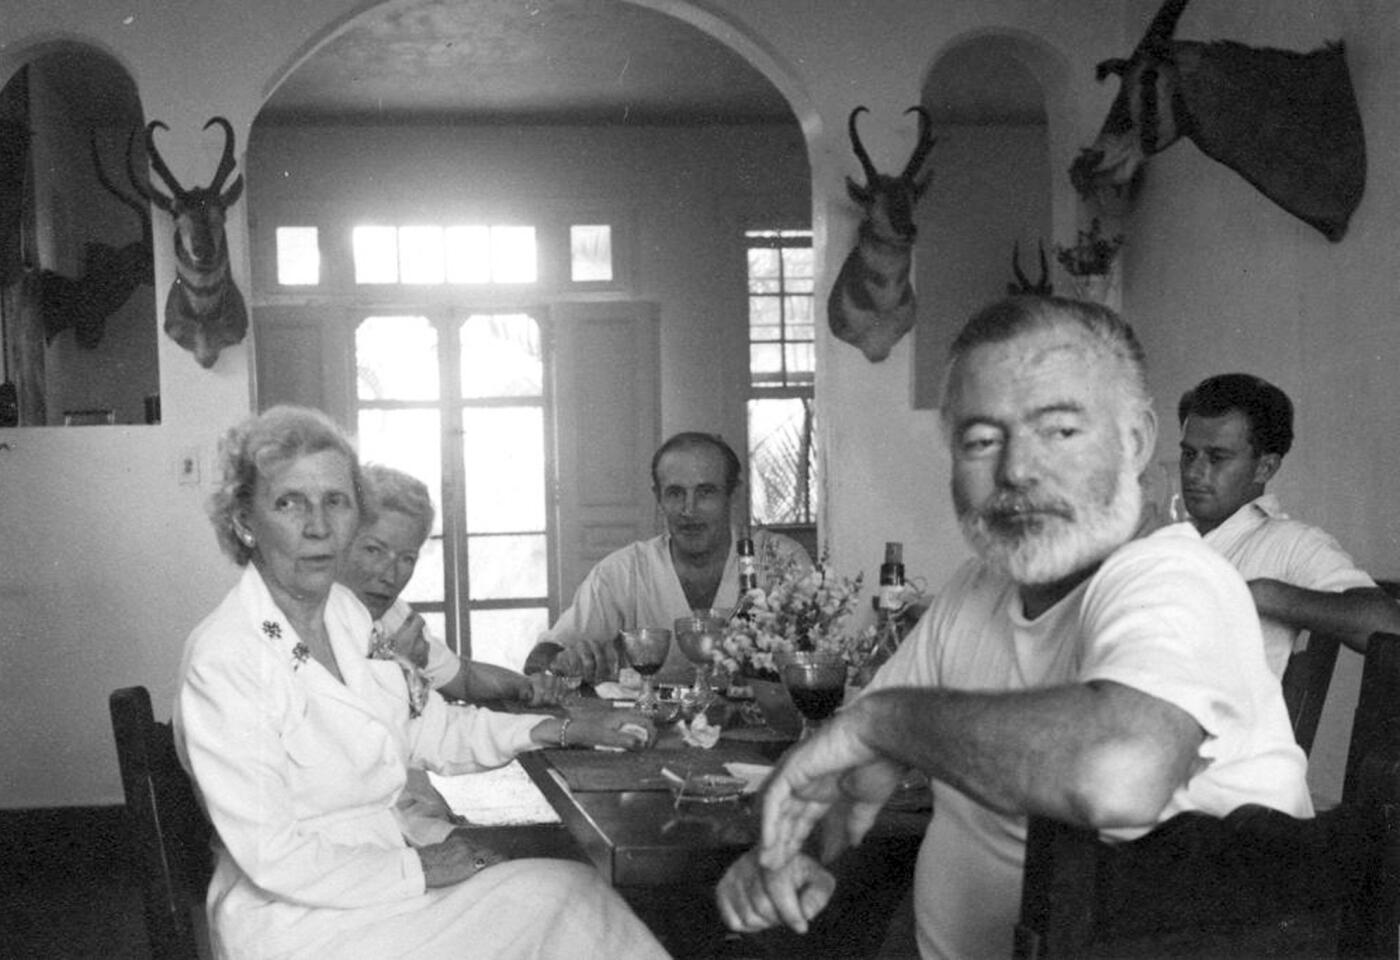 Hemingway dining in Cuba